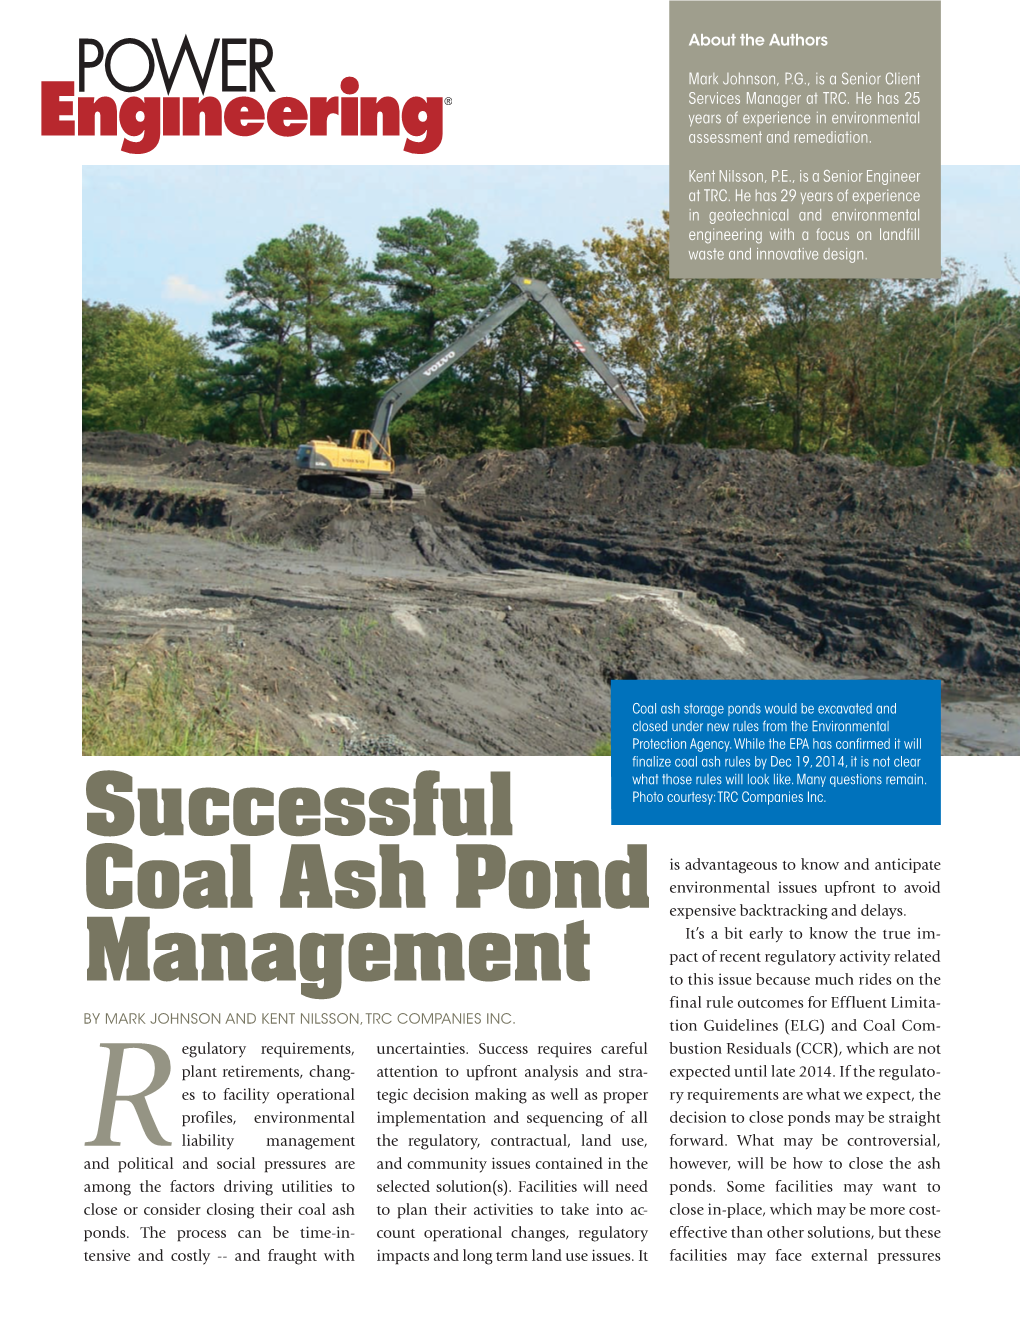 Successful Coal Ash Pond Management